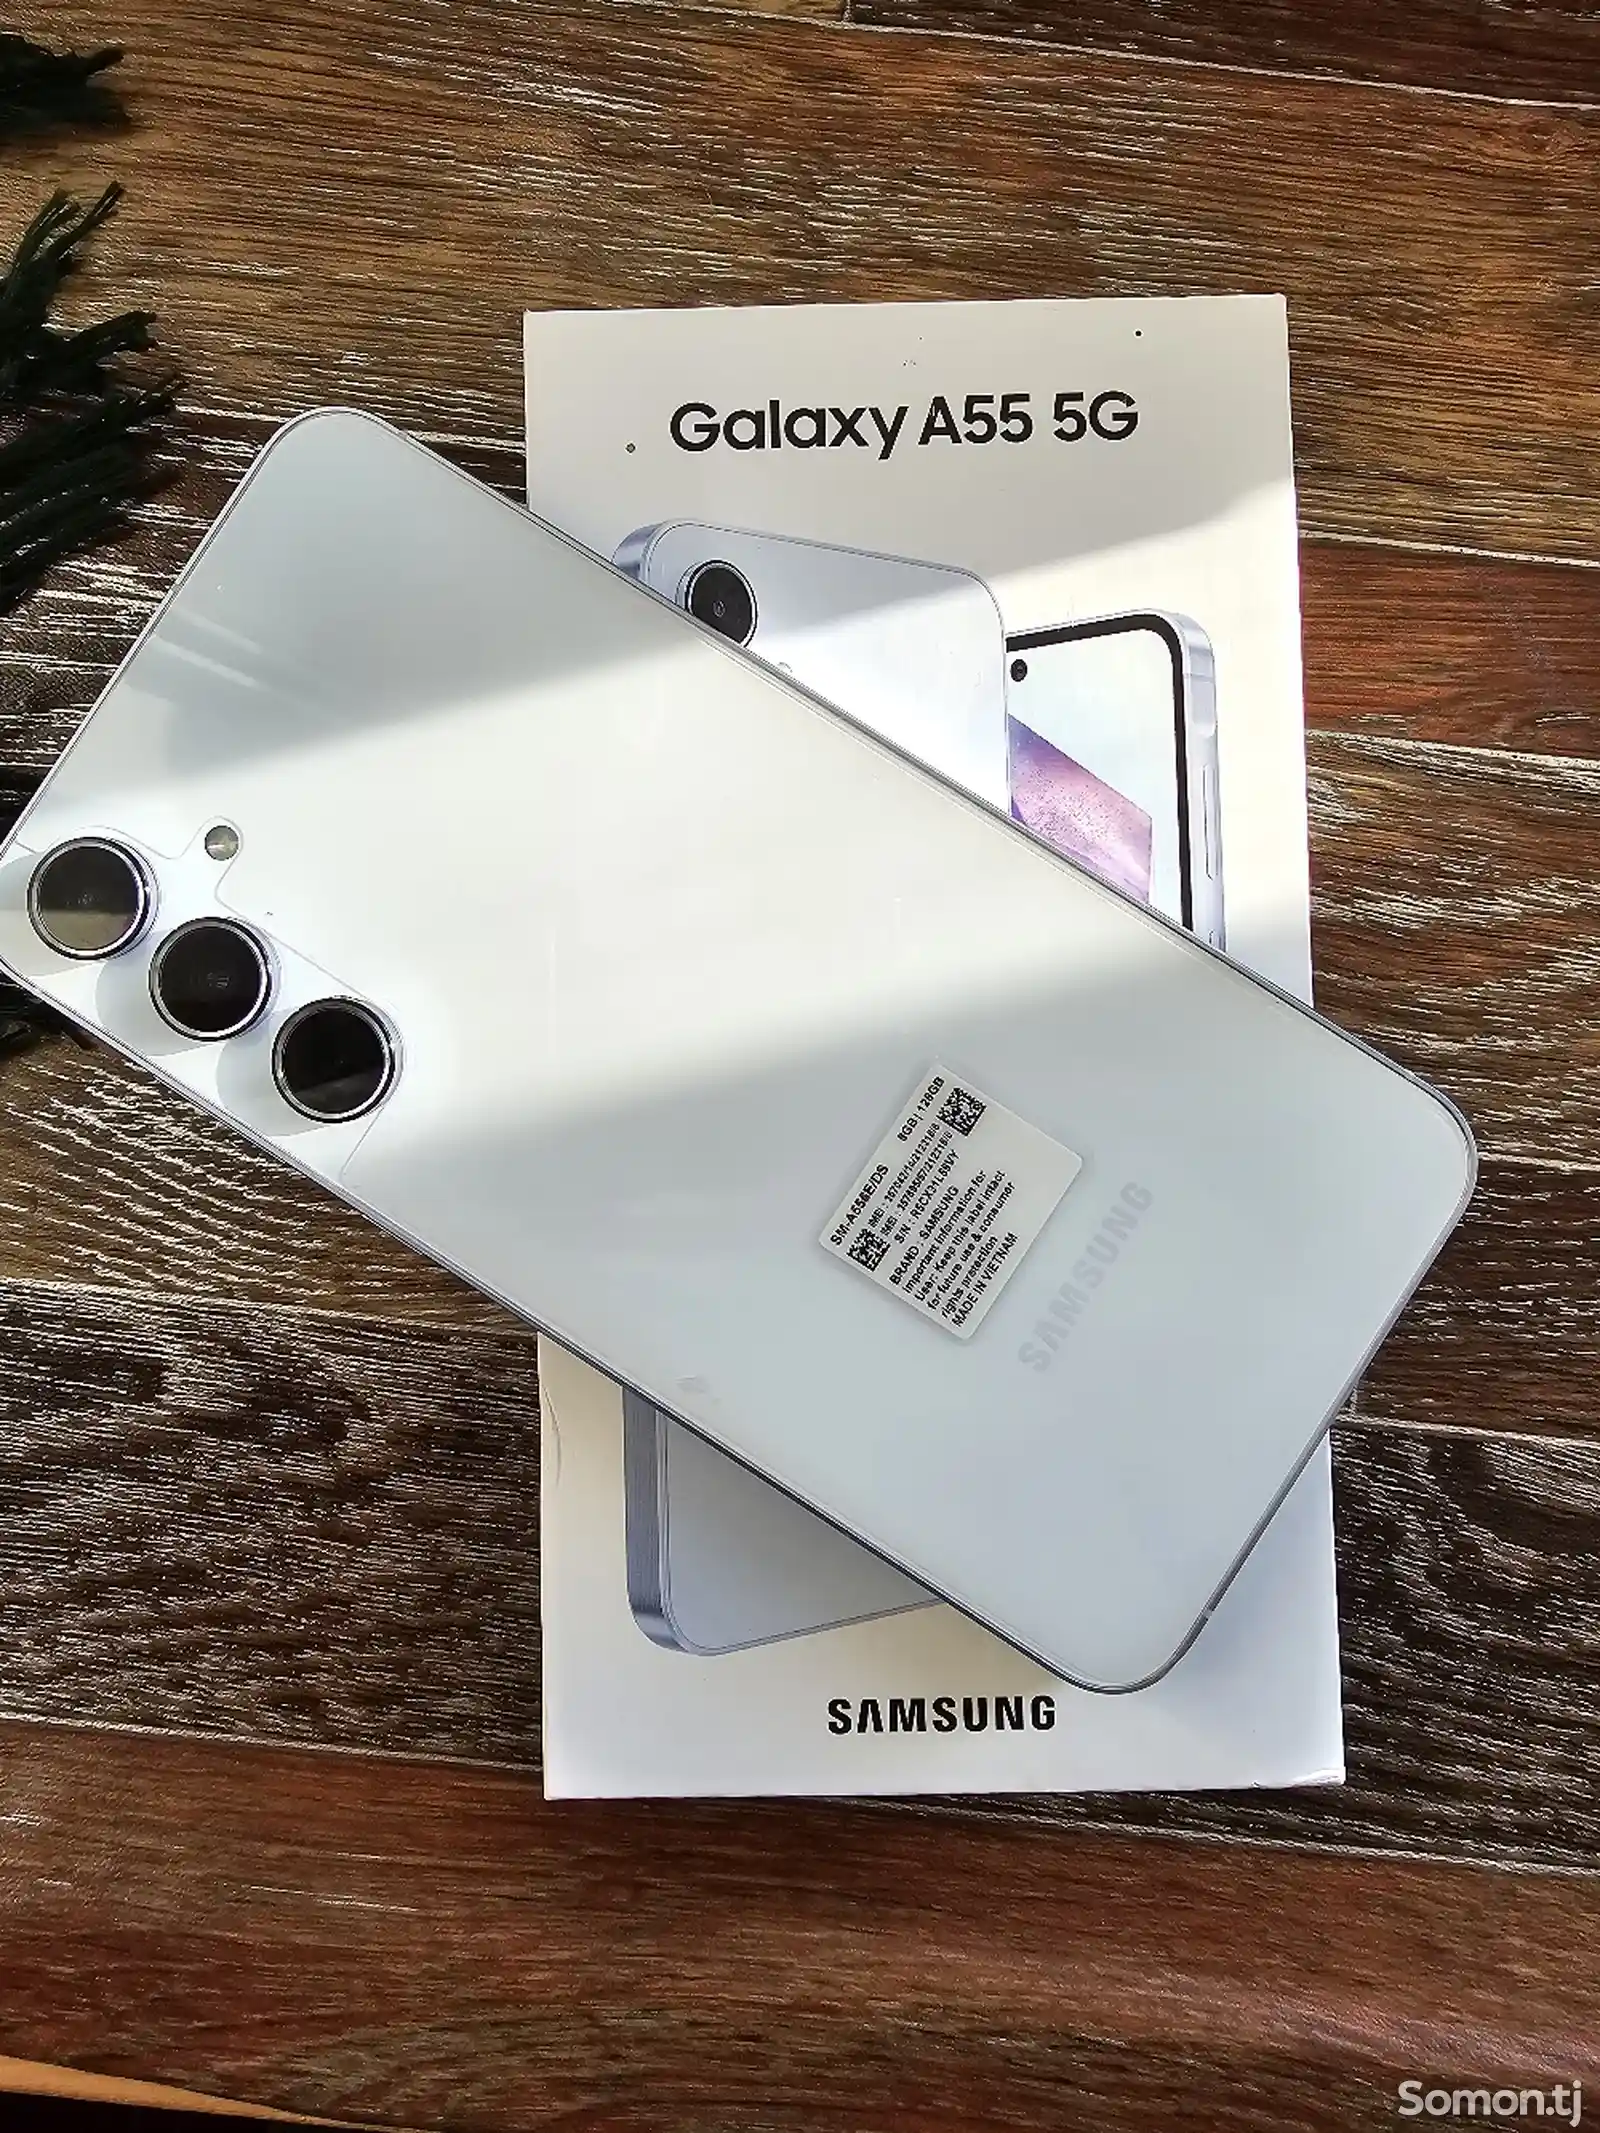 Samsung Galaxy A55-1